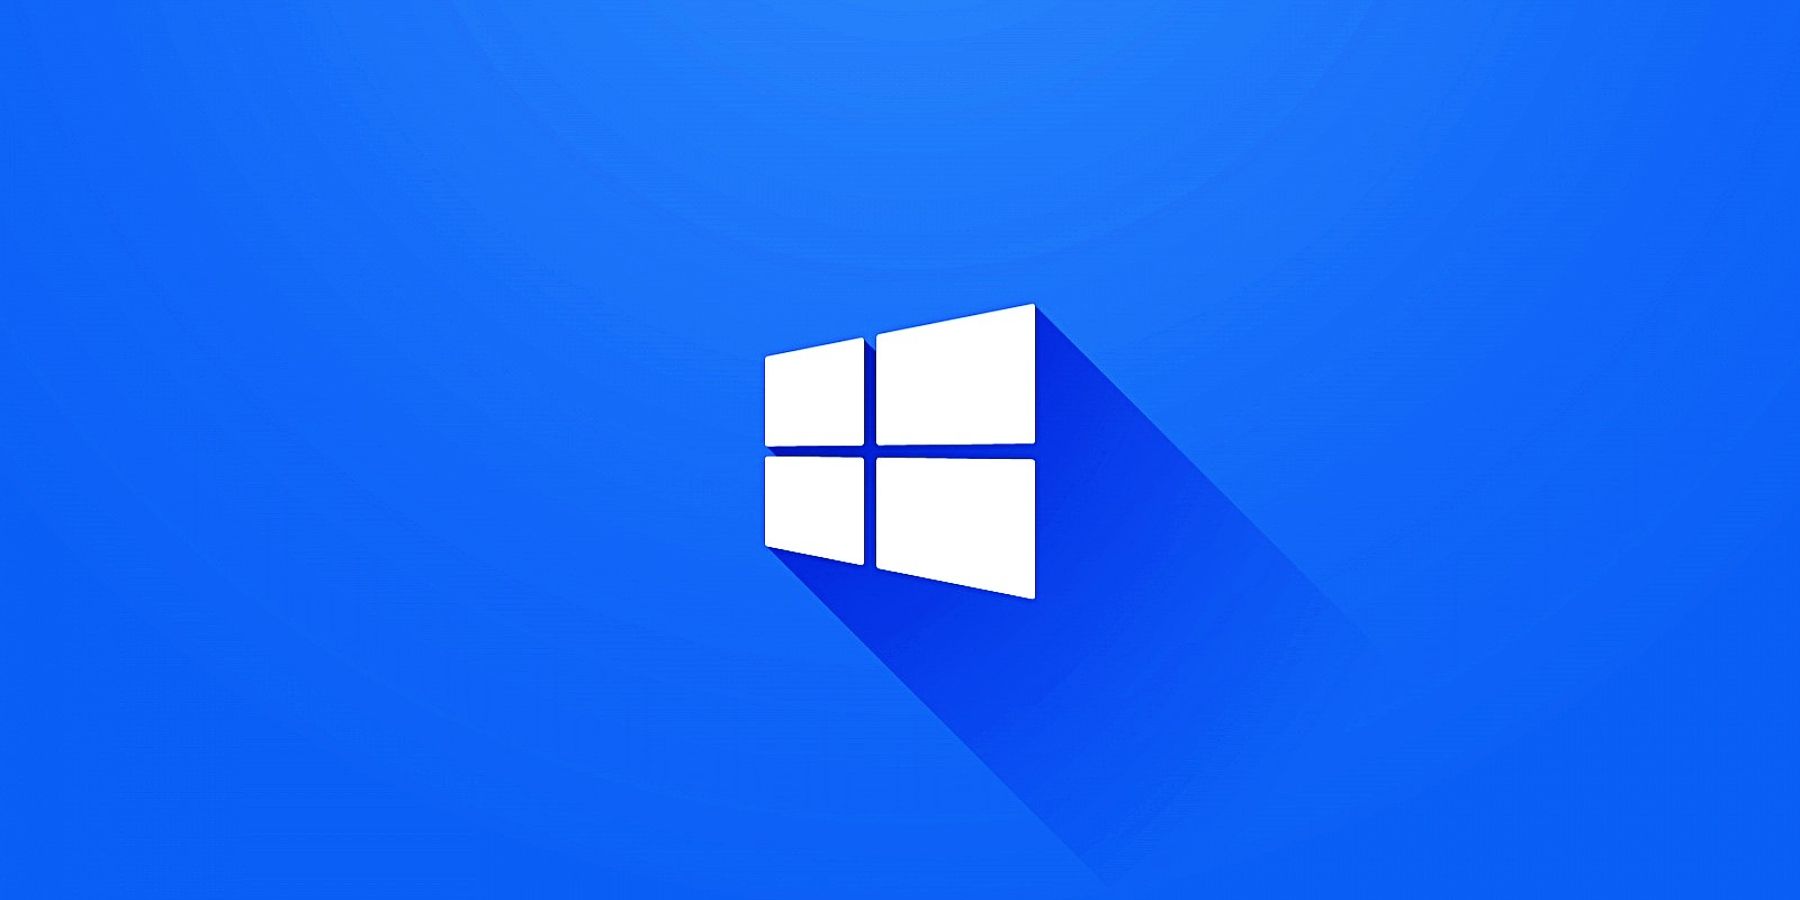 Windows 12: Bạn đã chuẩn bị sẵn sàng cho trải nghiệm Windows tiếp theo chưa? Windows 12 sẽ đem lại cho bạn nhiều tính năng mới và độc đáo hơn bao giờ hết, cùng với những hình nền đẹp mắt sẽ làm cho bạn phải ngỡ ngàng. Hãy cùng khám phá những hình nền đẹp và độc đáo nhất cho Windows 12 của bạn.